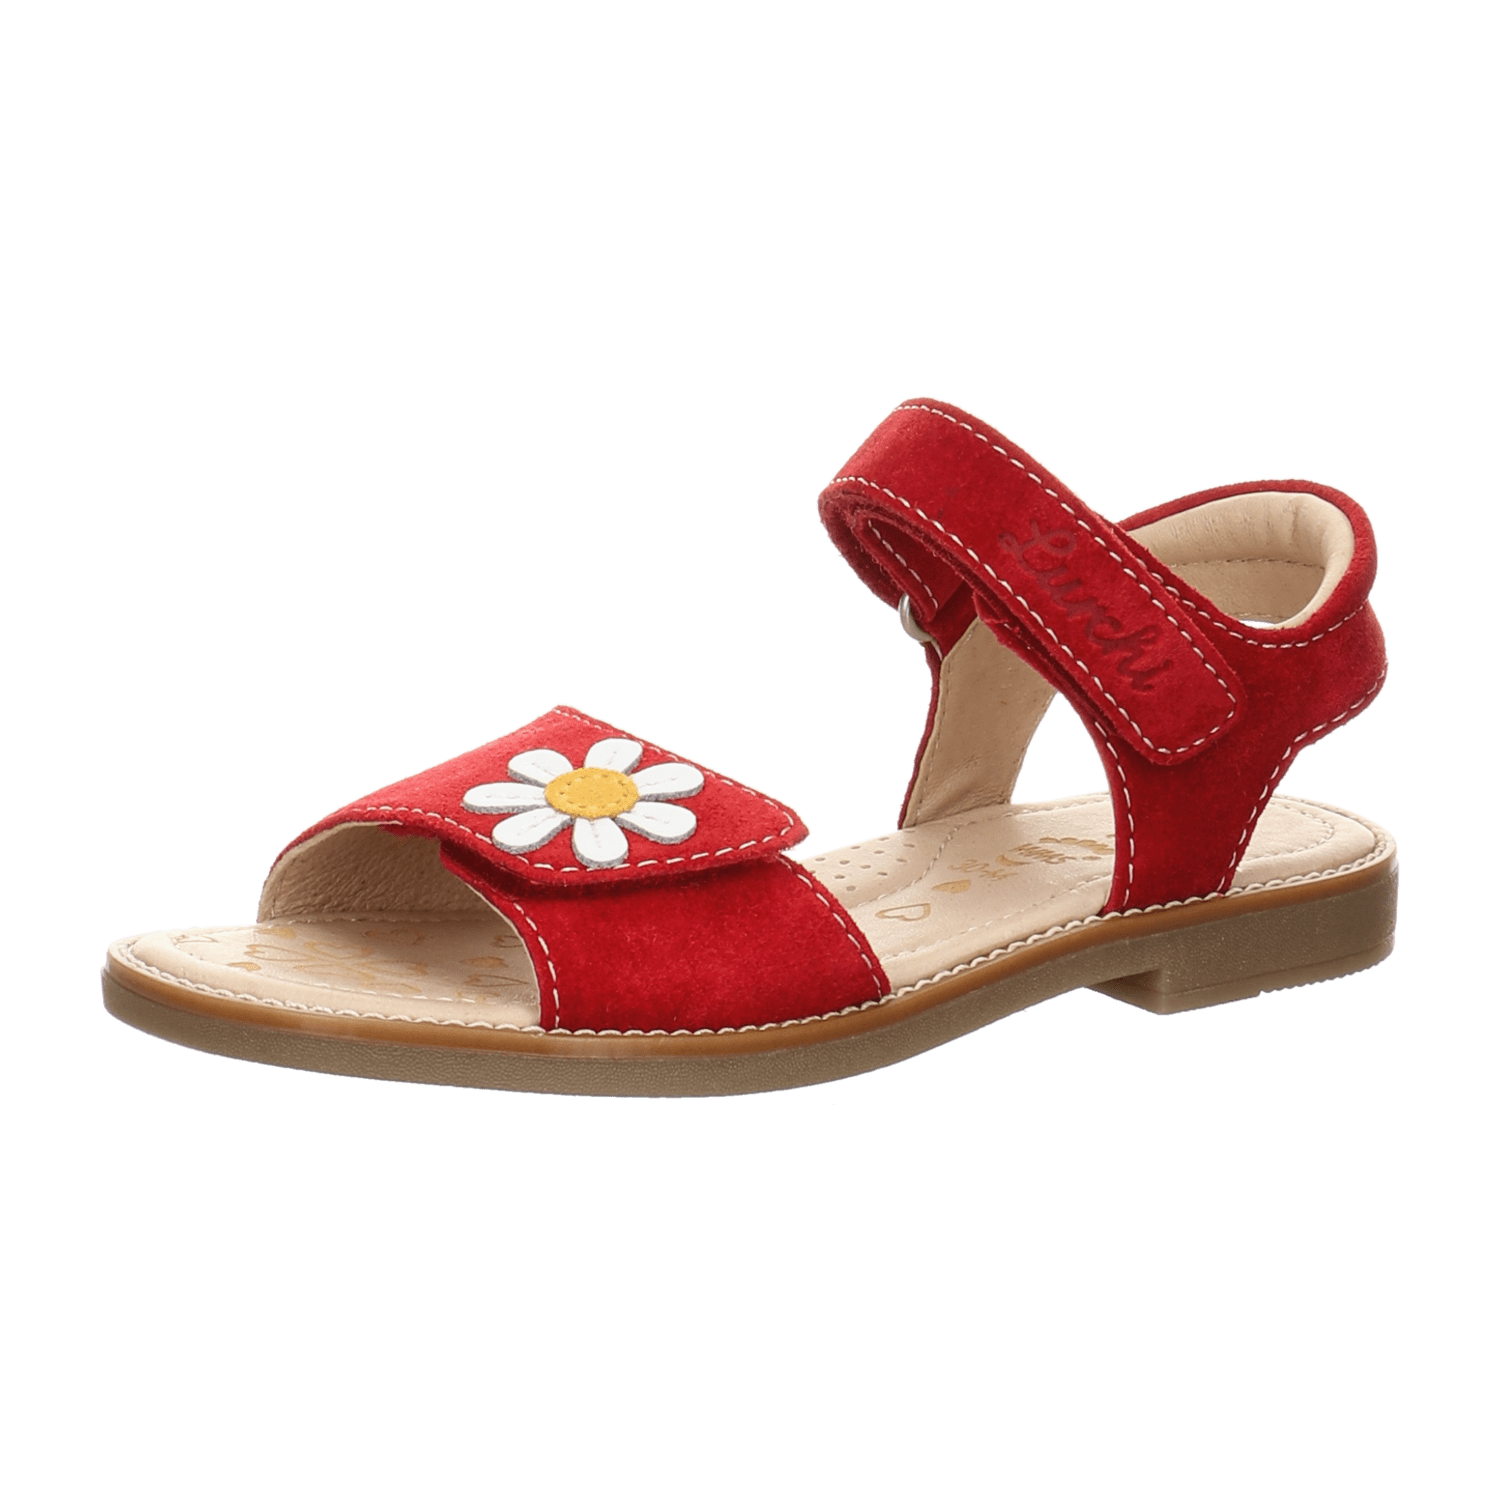 Mädchen für Sandalen kaufen Lurchi Kinder